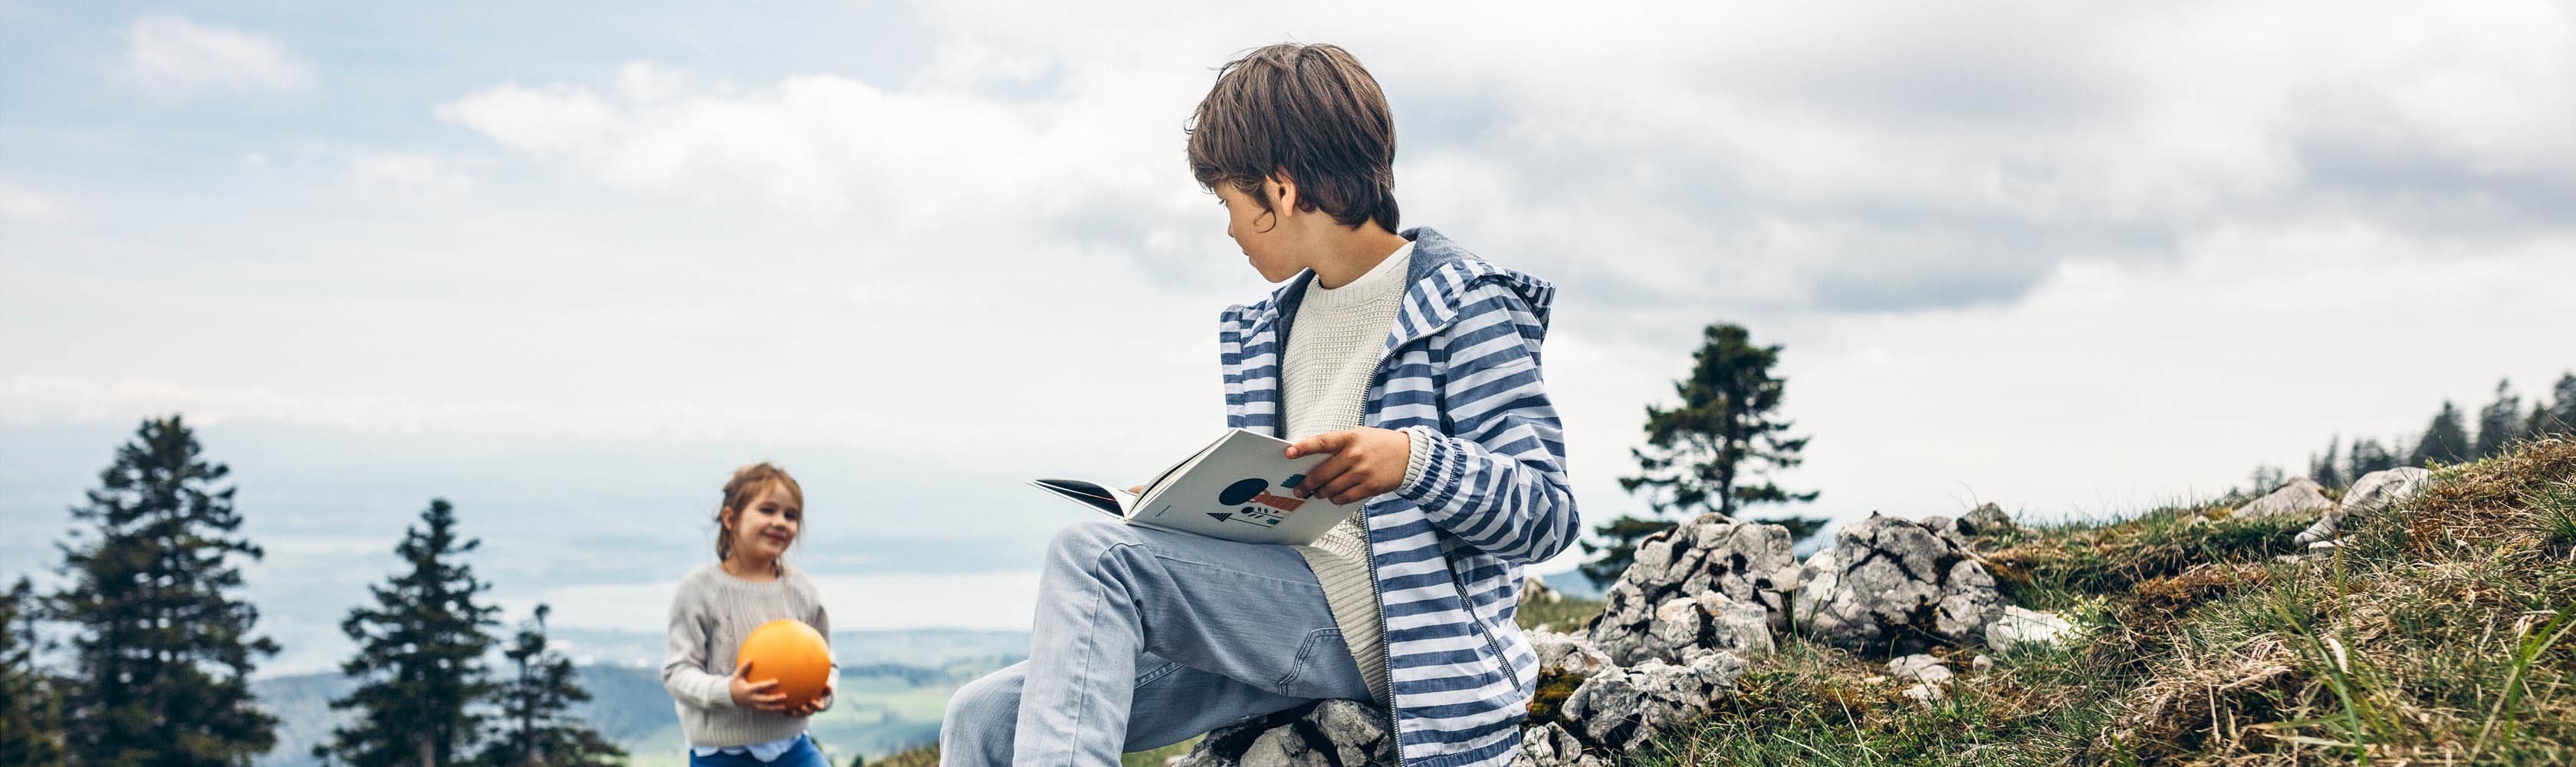 Un garçon est assis sur une pierre et lit un livre.